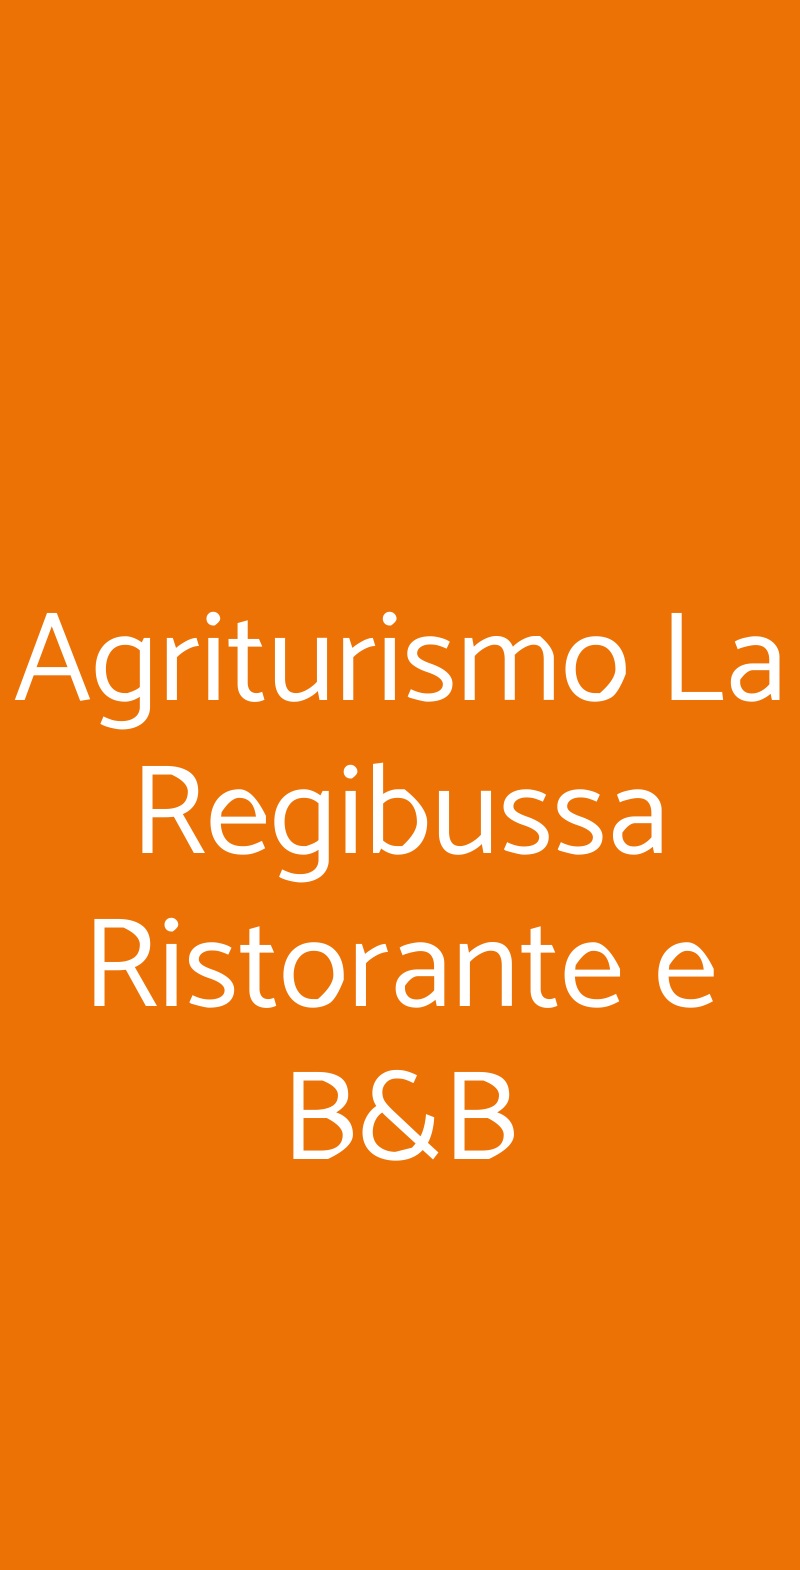 Agriturismo La Regibussa Ristorante e B&B Asti menù 1 pagina